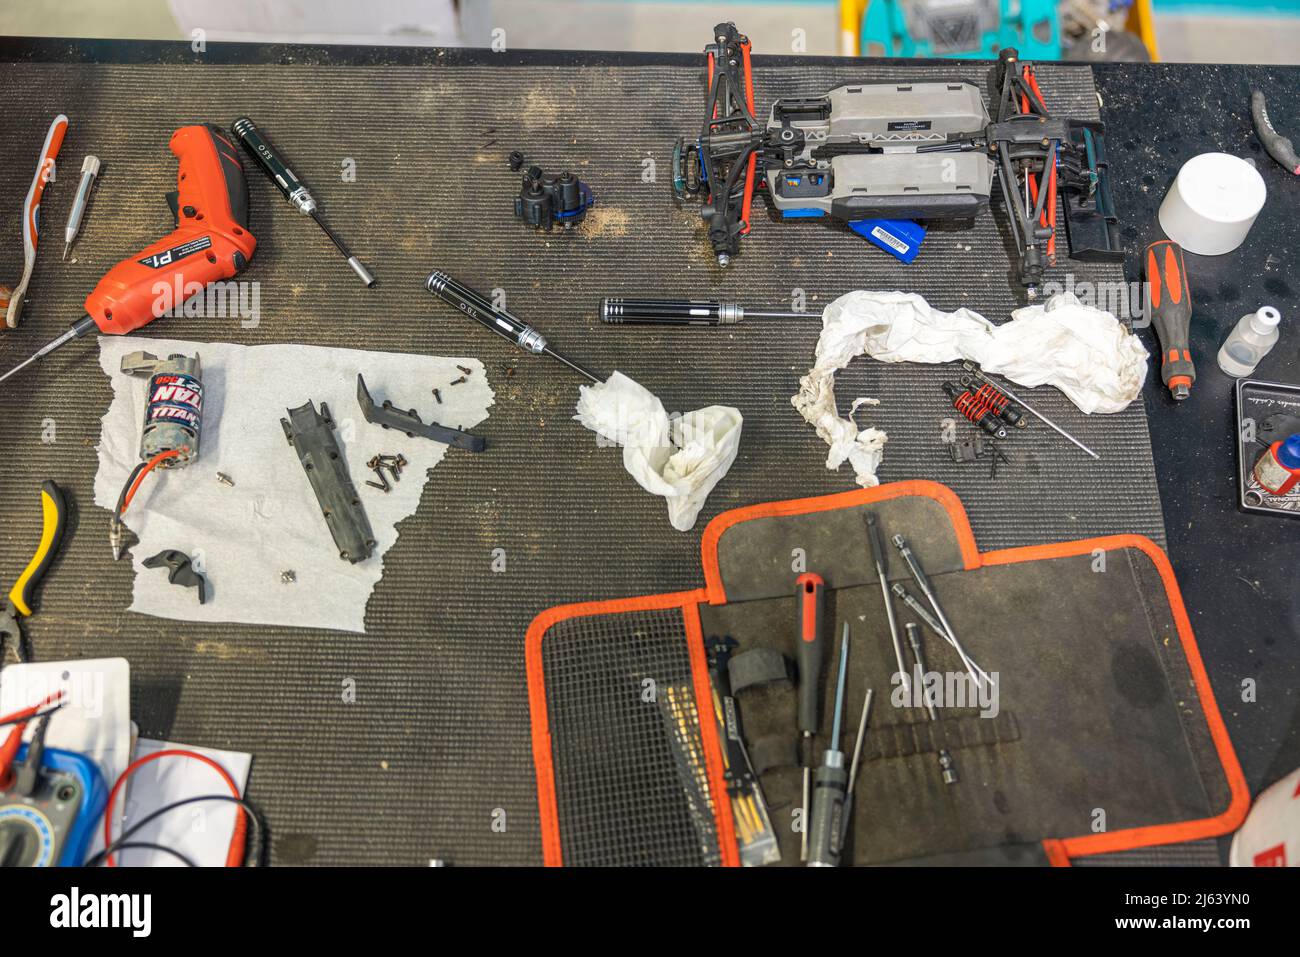 Vista de cerca de la mesa de trabajo con conjunto de herramientas y piezas de repuesto para la reparación de coches de juguete controlados por radio. SUECIA. Foto de stock